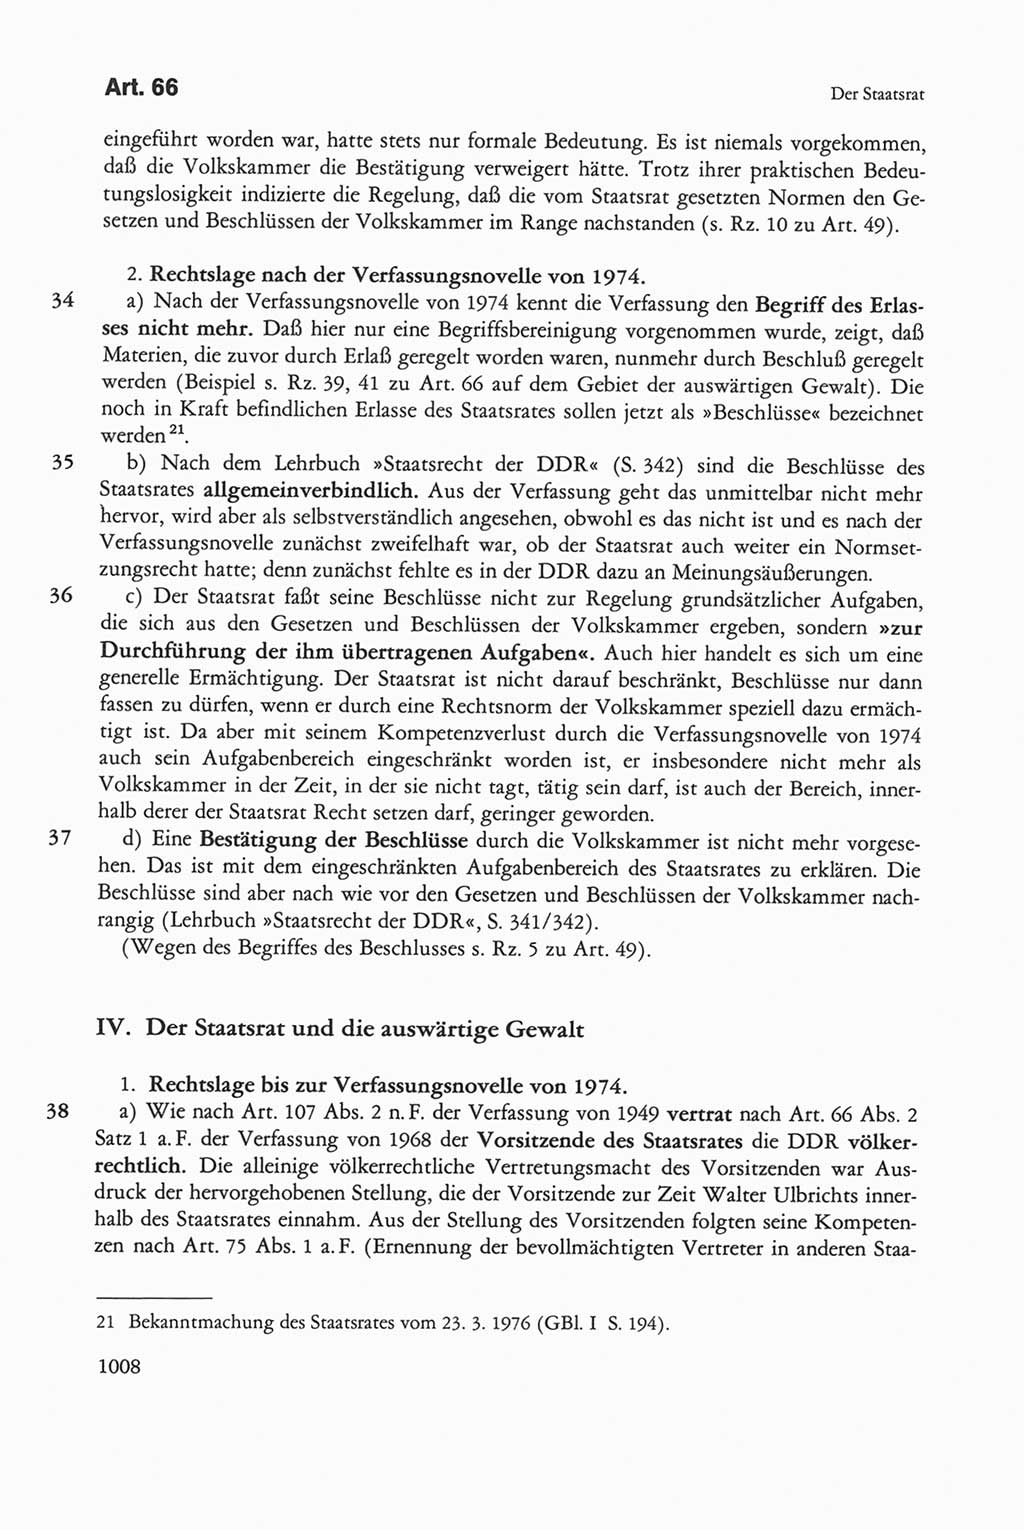 Die sozialistische Verfassung der Deutschen Demokratischen Republik (DDR), Kommentar mit einem Nachtrag 1997, Seite 1008 (Soz. Verf. DDR Komm. Nachtr. 1997, S. 1008)